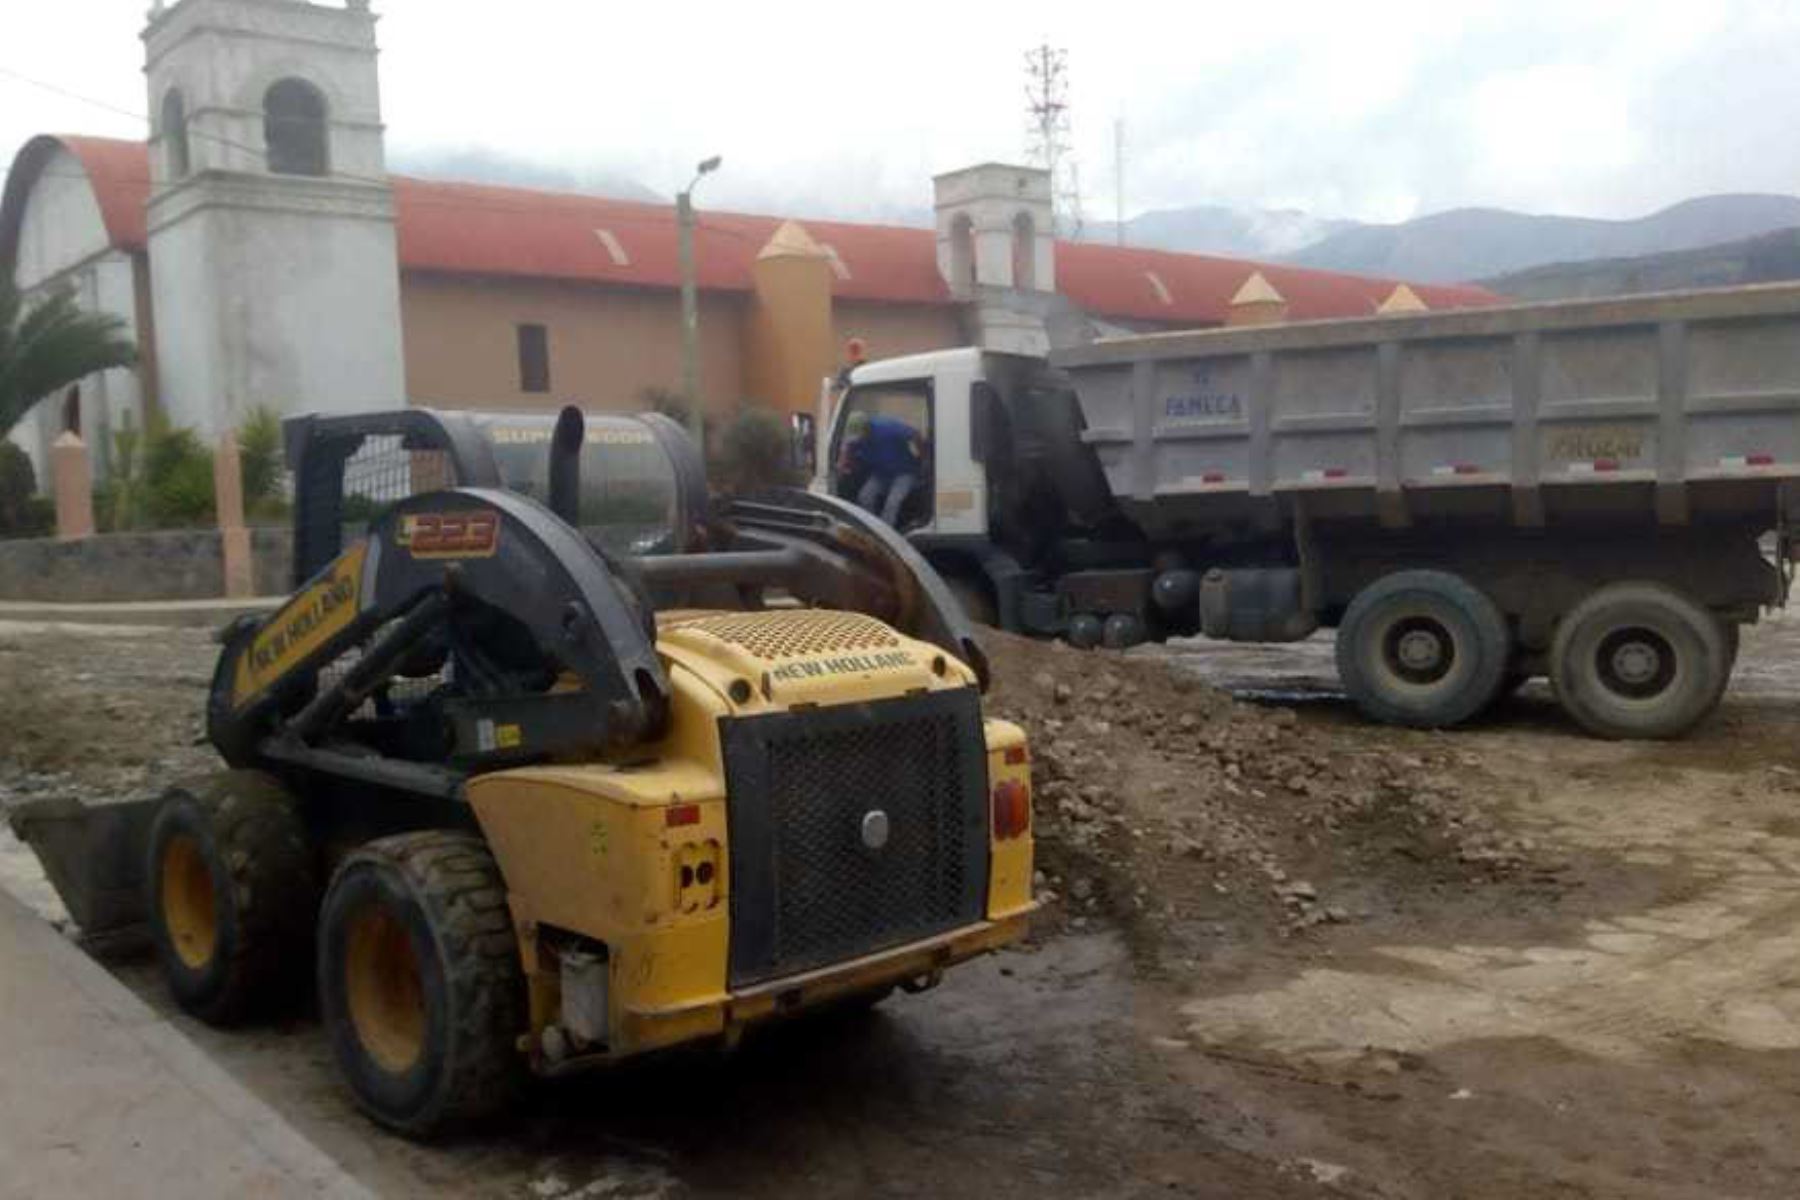 Los trabajos de limpieza y desatoro de los desagües del distrito de Pamapacolca, en Arequipa que colapsaron tras la caída de un huaico en la zona, continúan hoy a cargo de las autoridades de la provincia de Castilla y pobladores del lugar, informó la alcaldesa Paola Lazo.